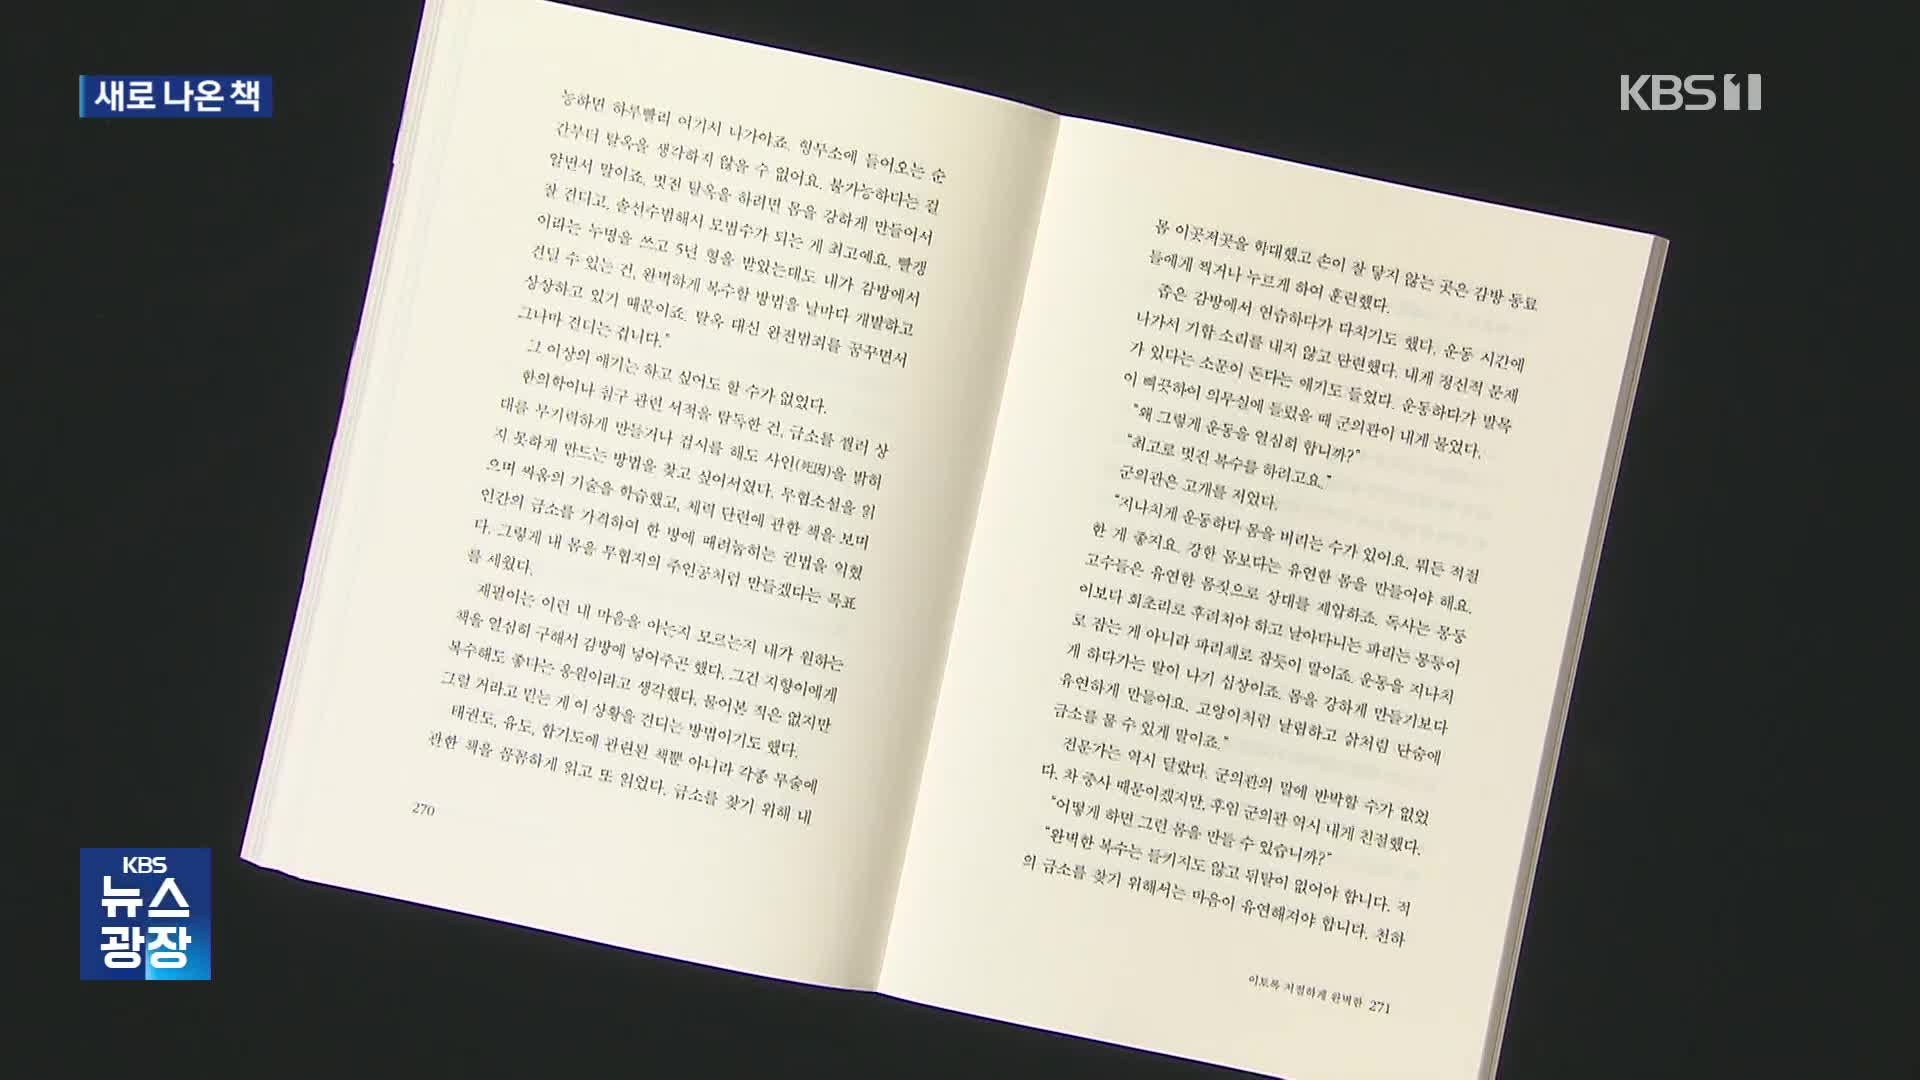 [새로 나온 책] 밀리언셀러 작가 김홍신의 새 장편 ‘죽어나간 시간을 위한 애도’ 외